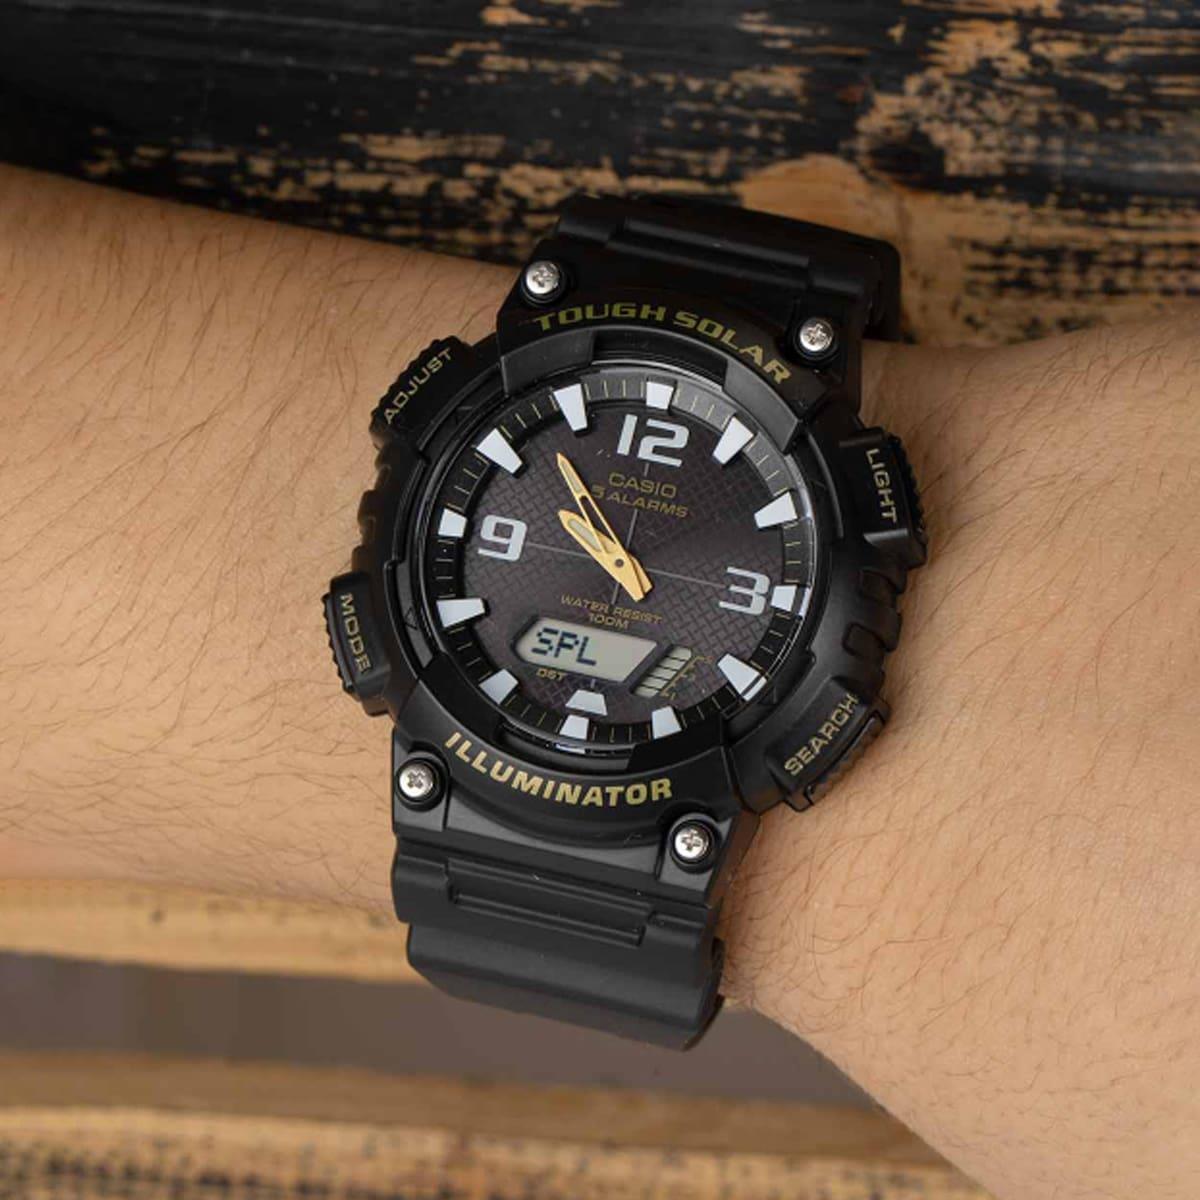 Casio AQ-S810W-1BVDF Standart Collection Digital Men's Watch